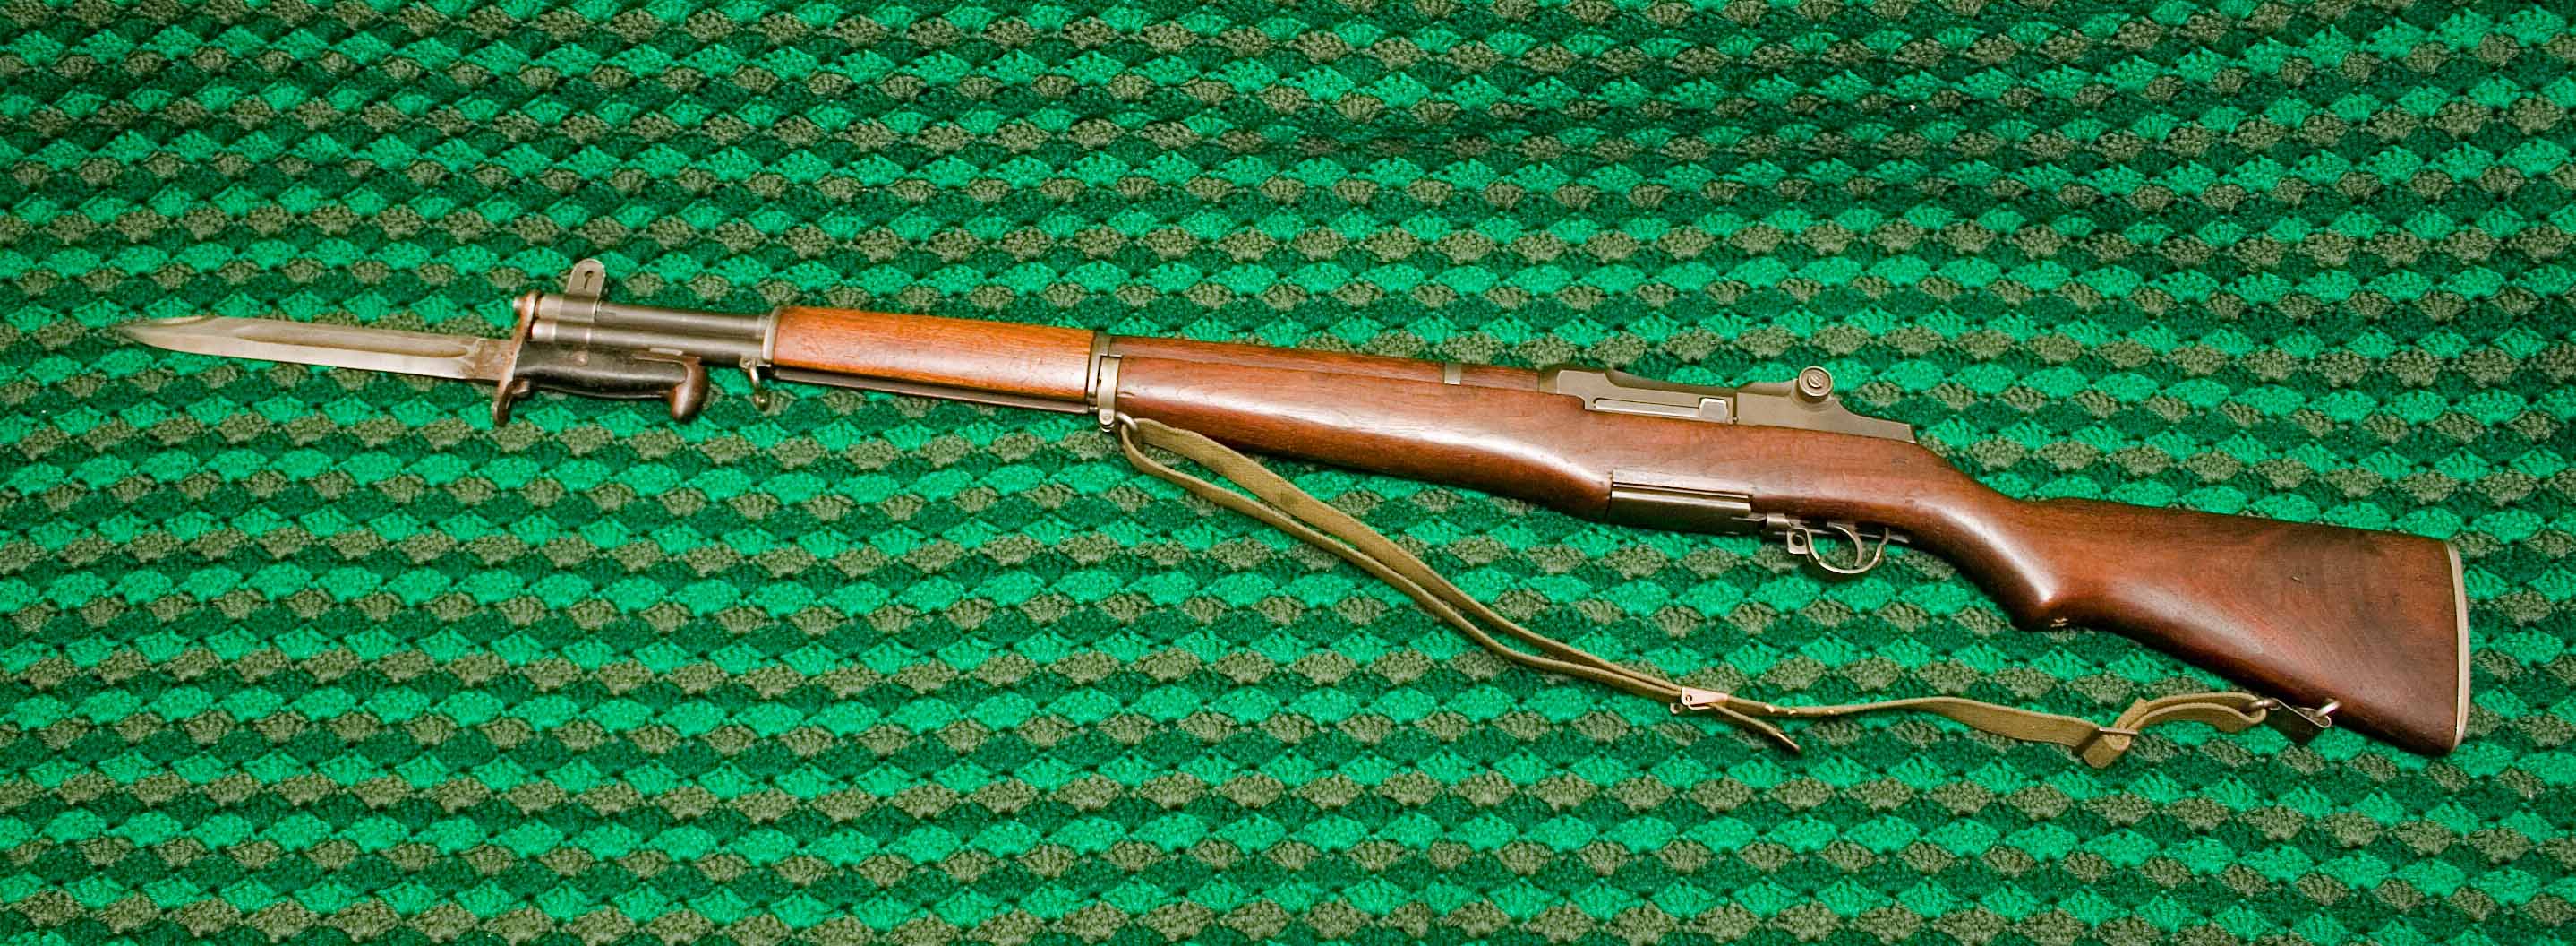 M1 Garand bayonet.jpg.